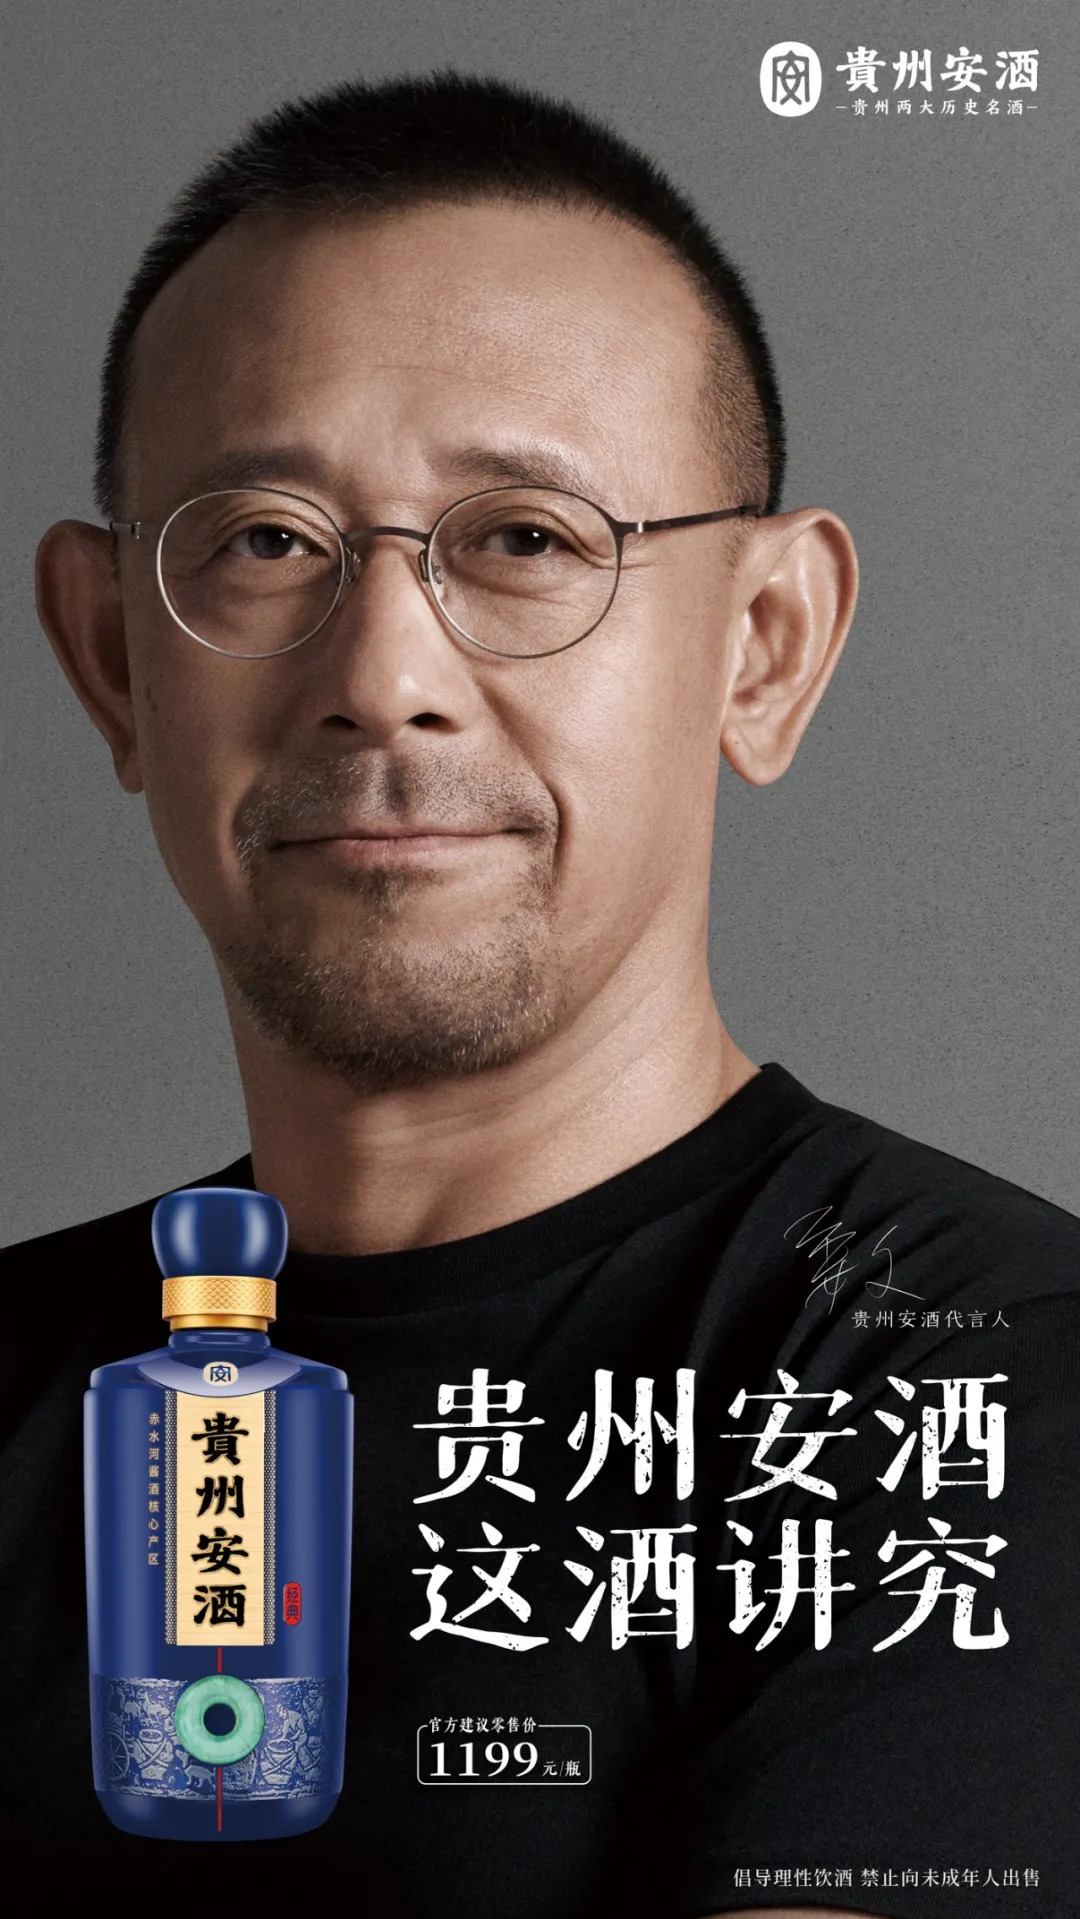 "讲究"的志同道合姜文代言贵州安酒的广告语中,另一句文案,则是"贵州